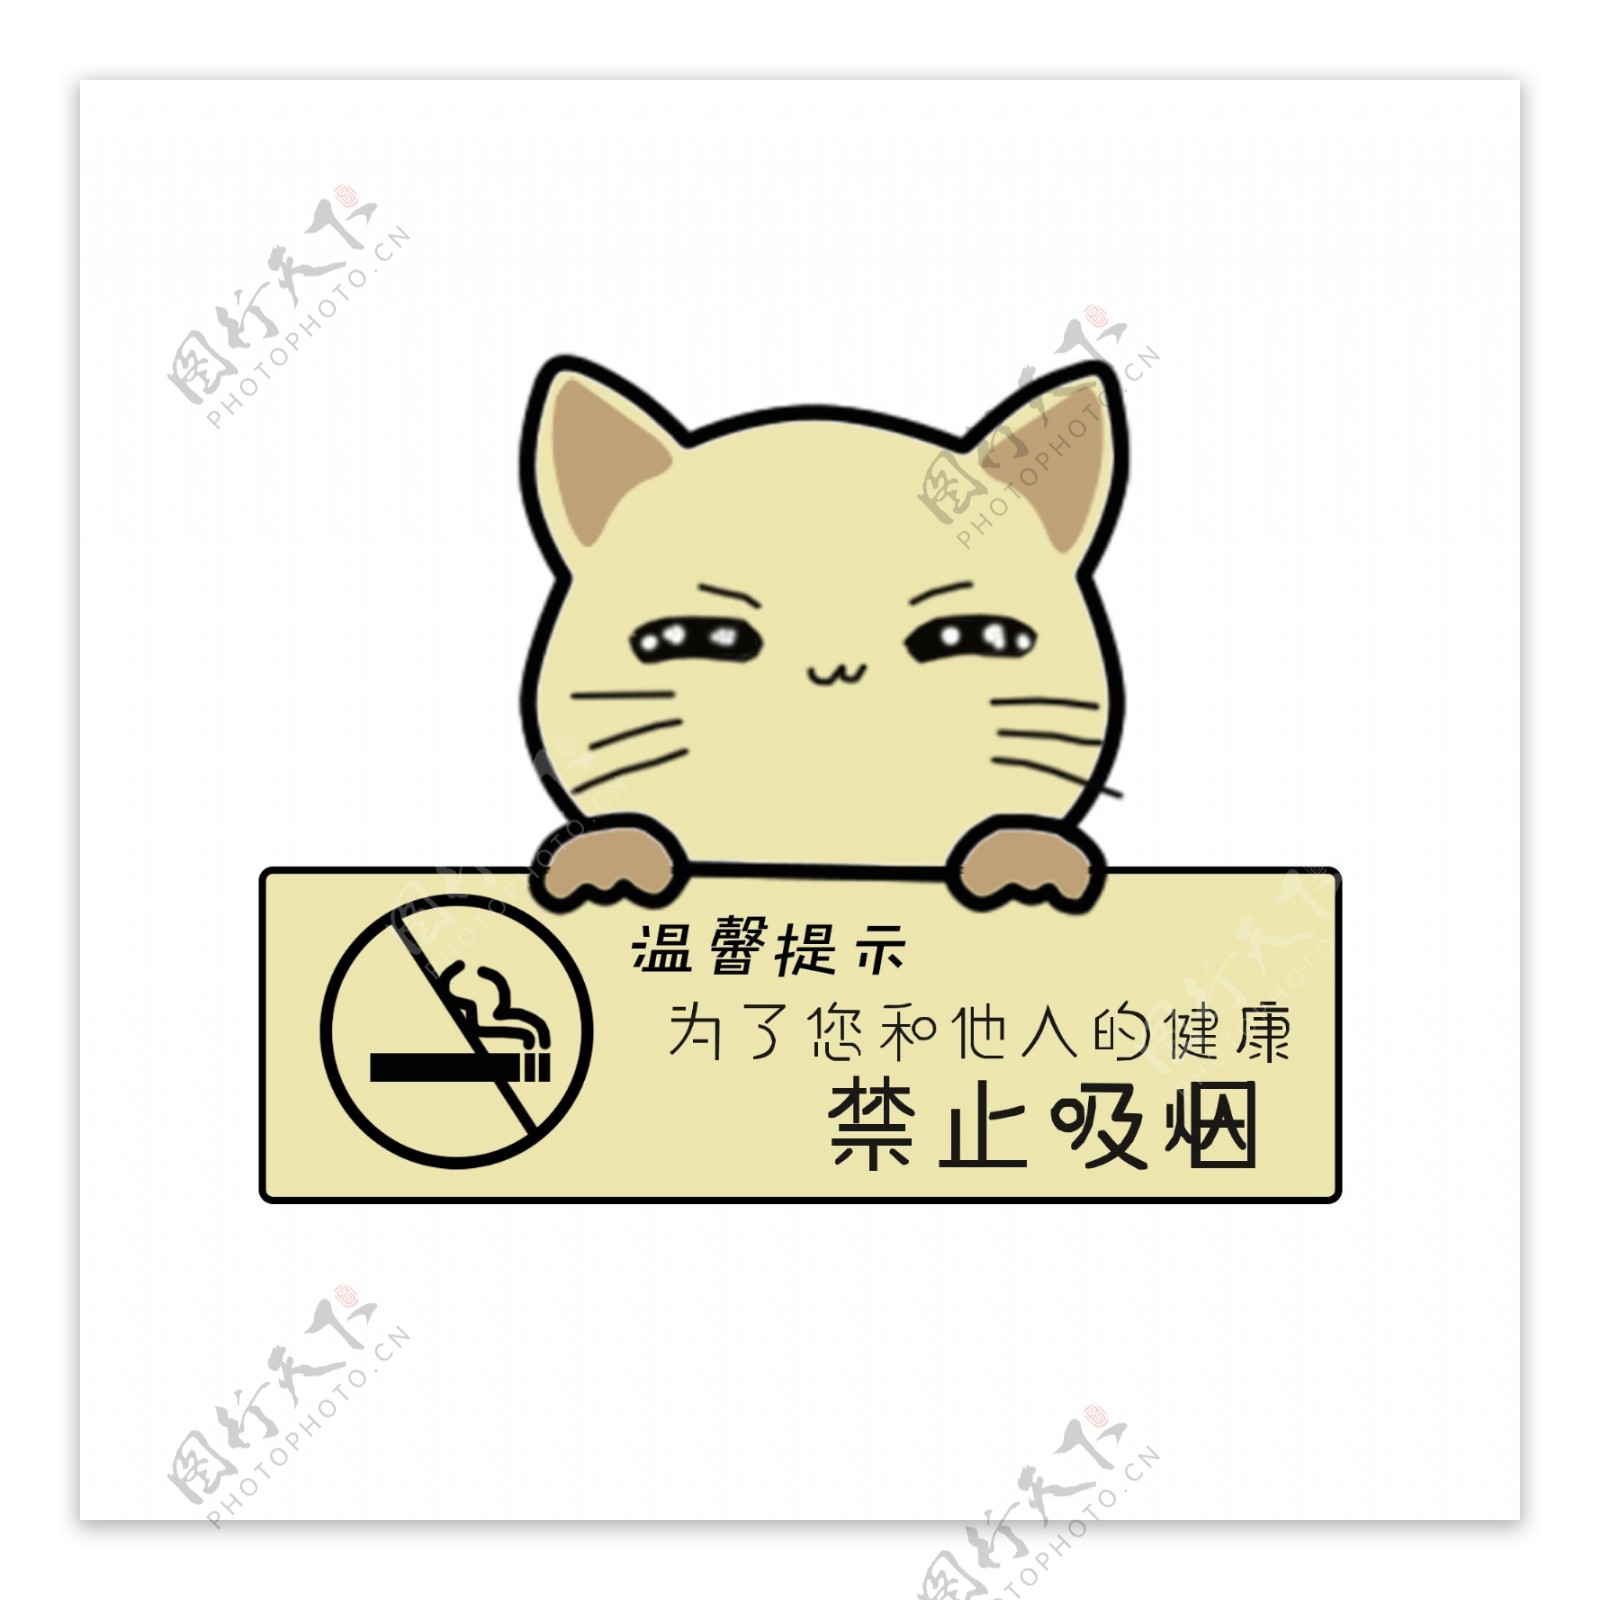 温馨提示语请勿吸烟可爱小猫提示标牌设计